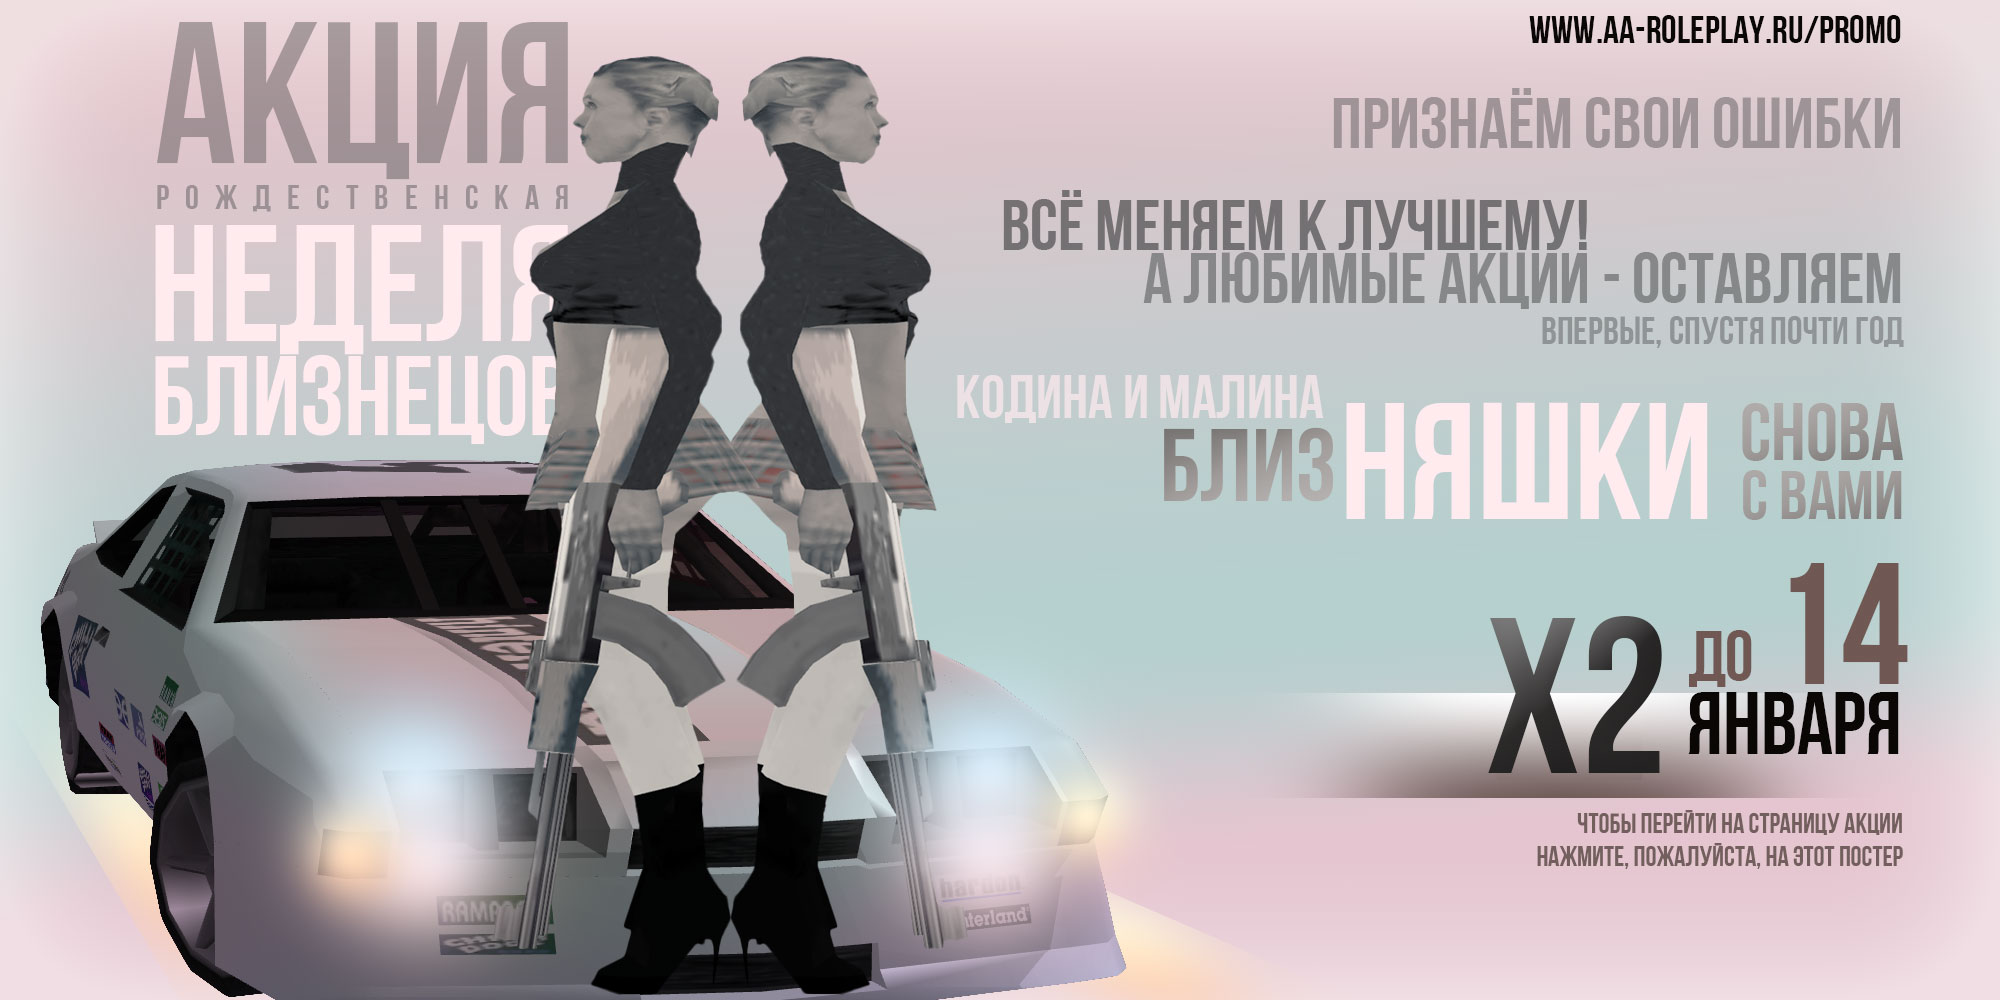 Постер акции - Неделя близнецов (197.92 КБ) Просмотров: 2062